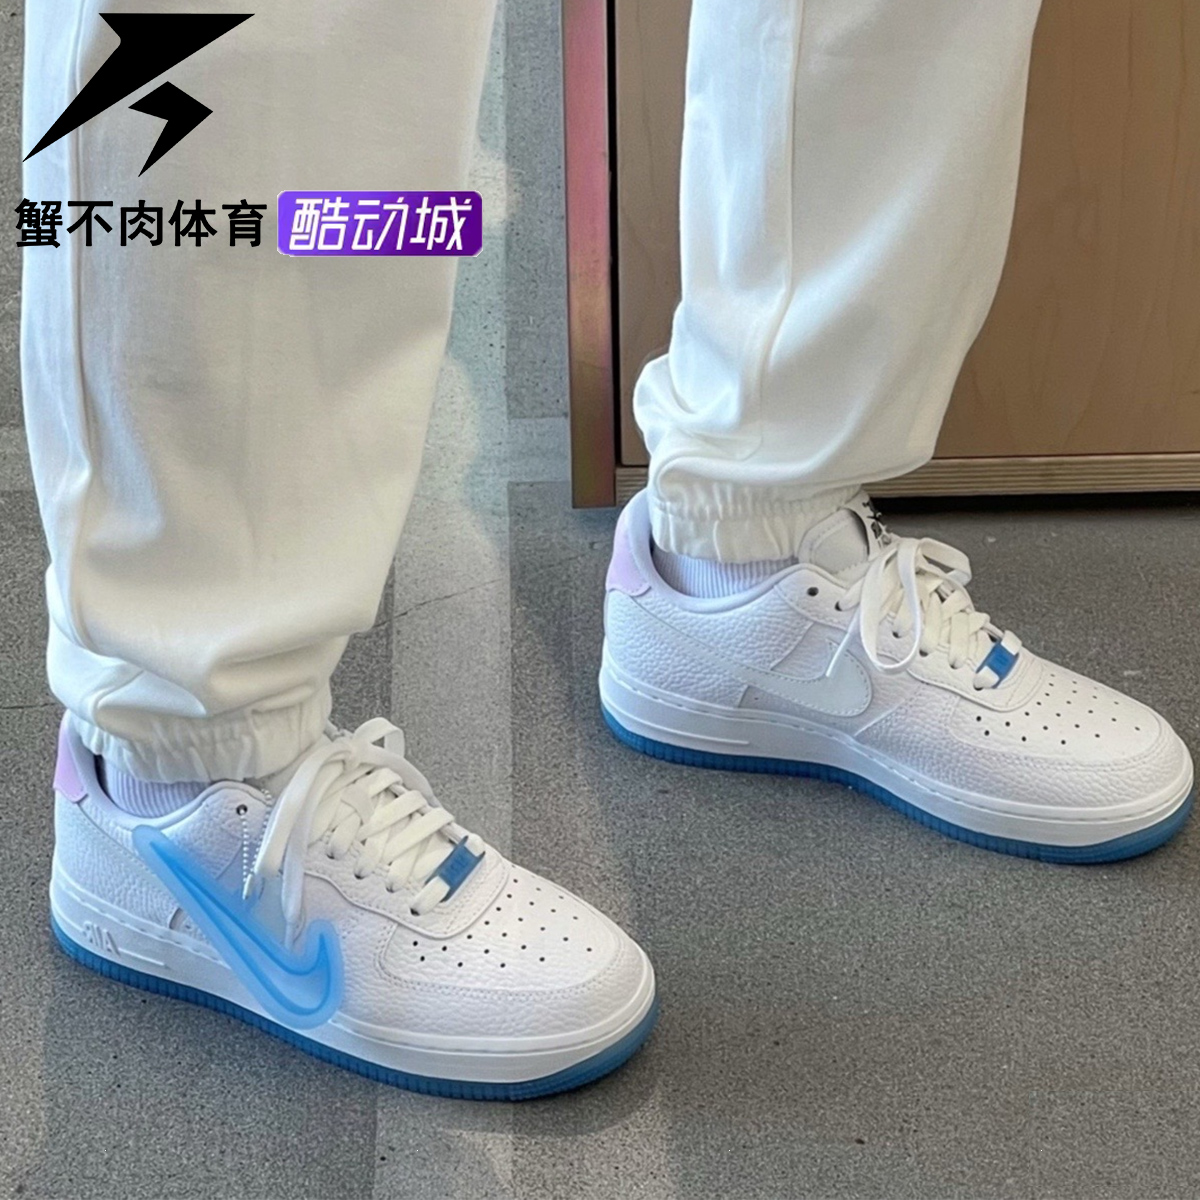 耐克 Nike Air Force1热感应后跟 低帮板鞋 女款 白蓝 DA8301-101